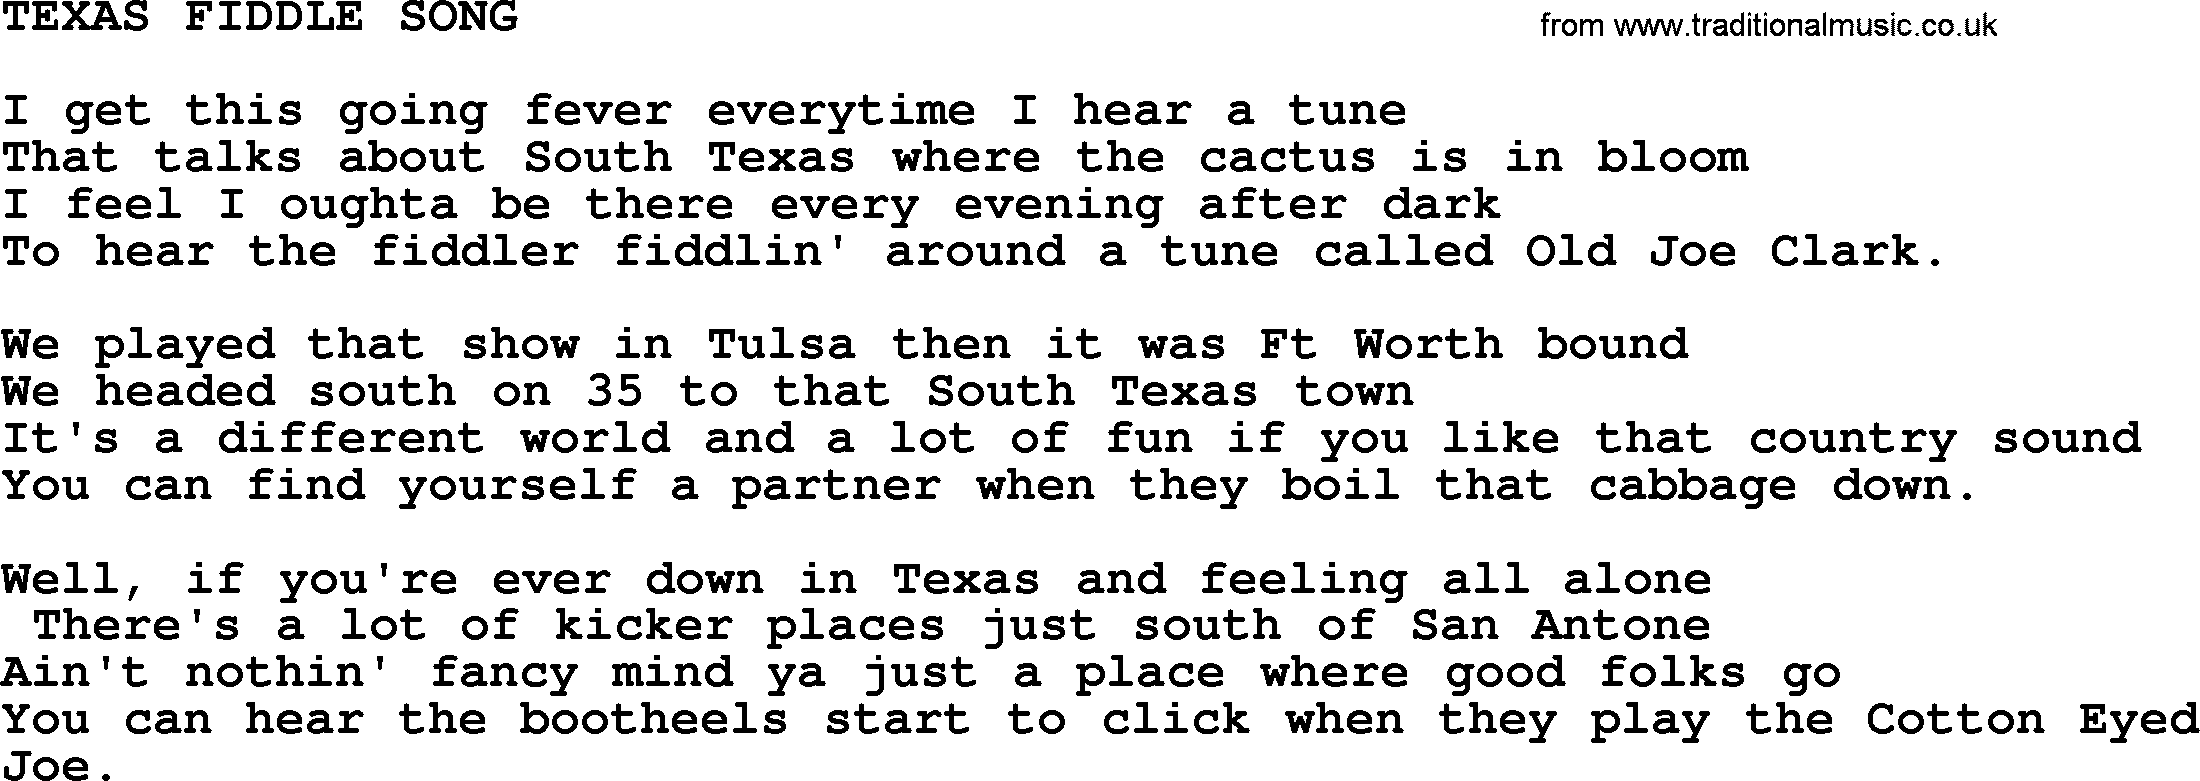 Merle Haggard song: Texas Fiddle Song, lyrics.